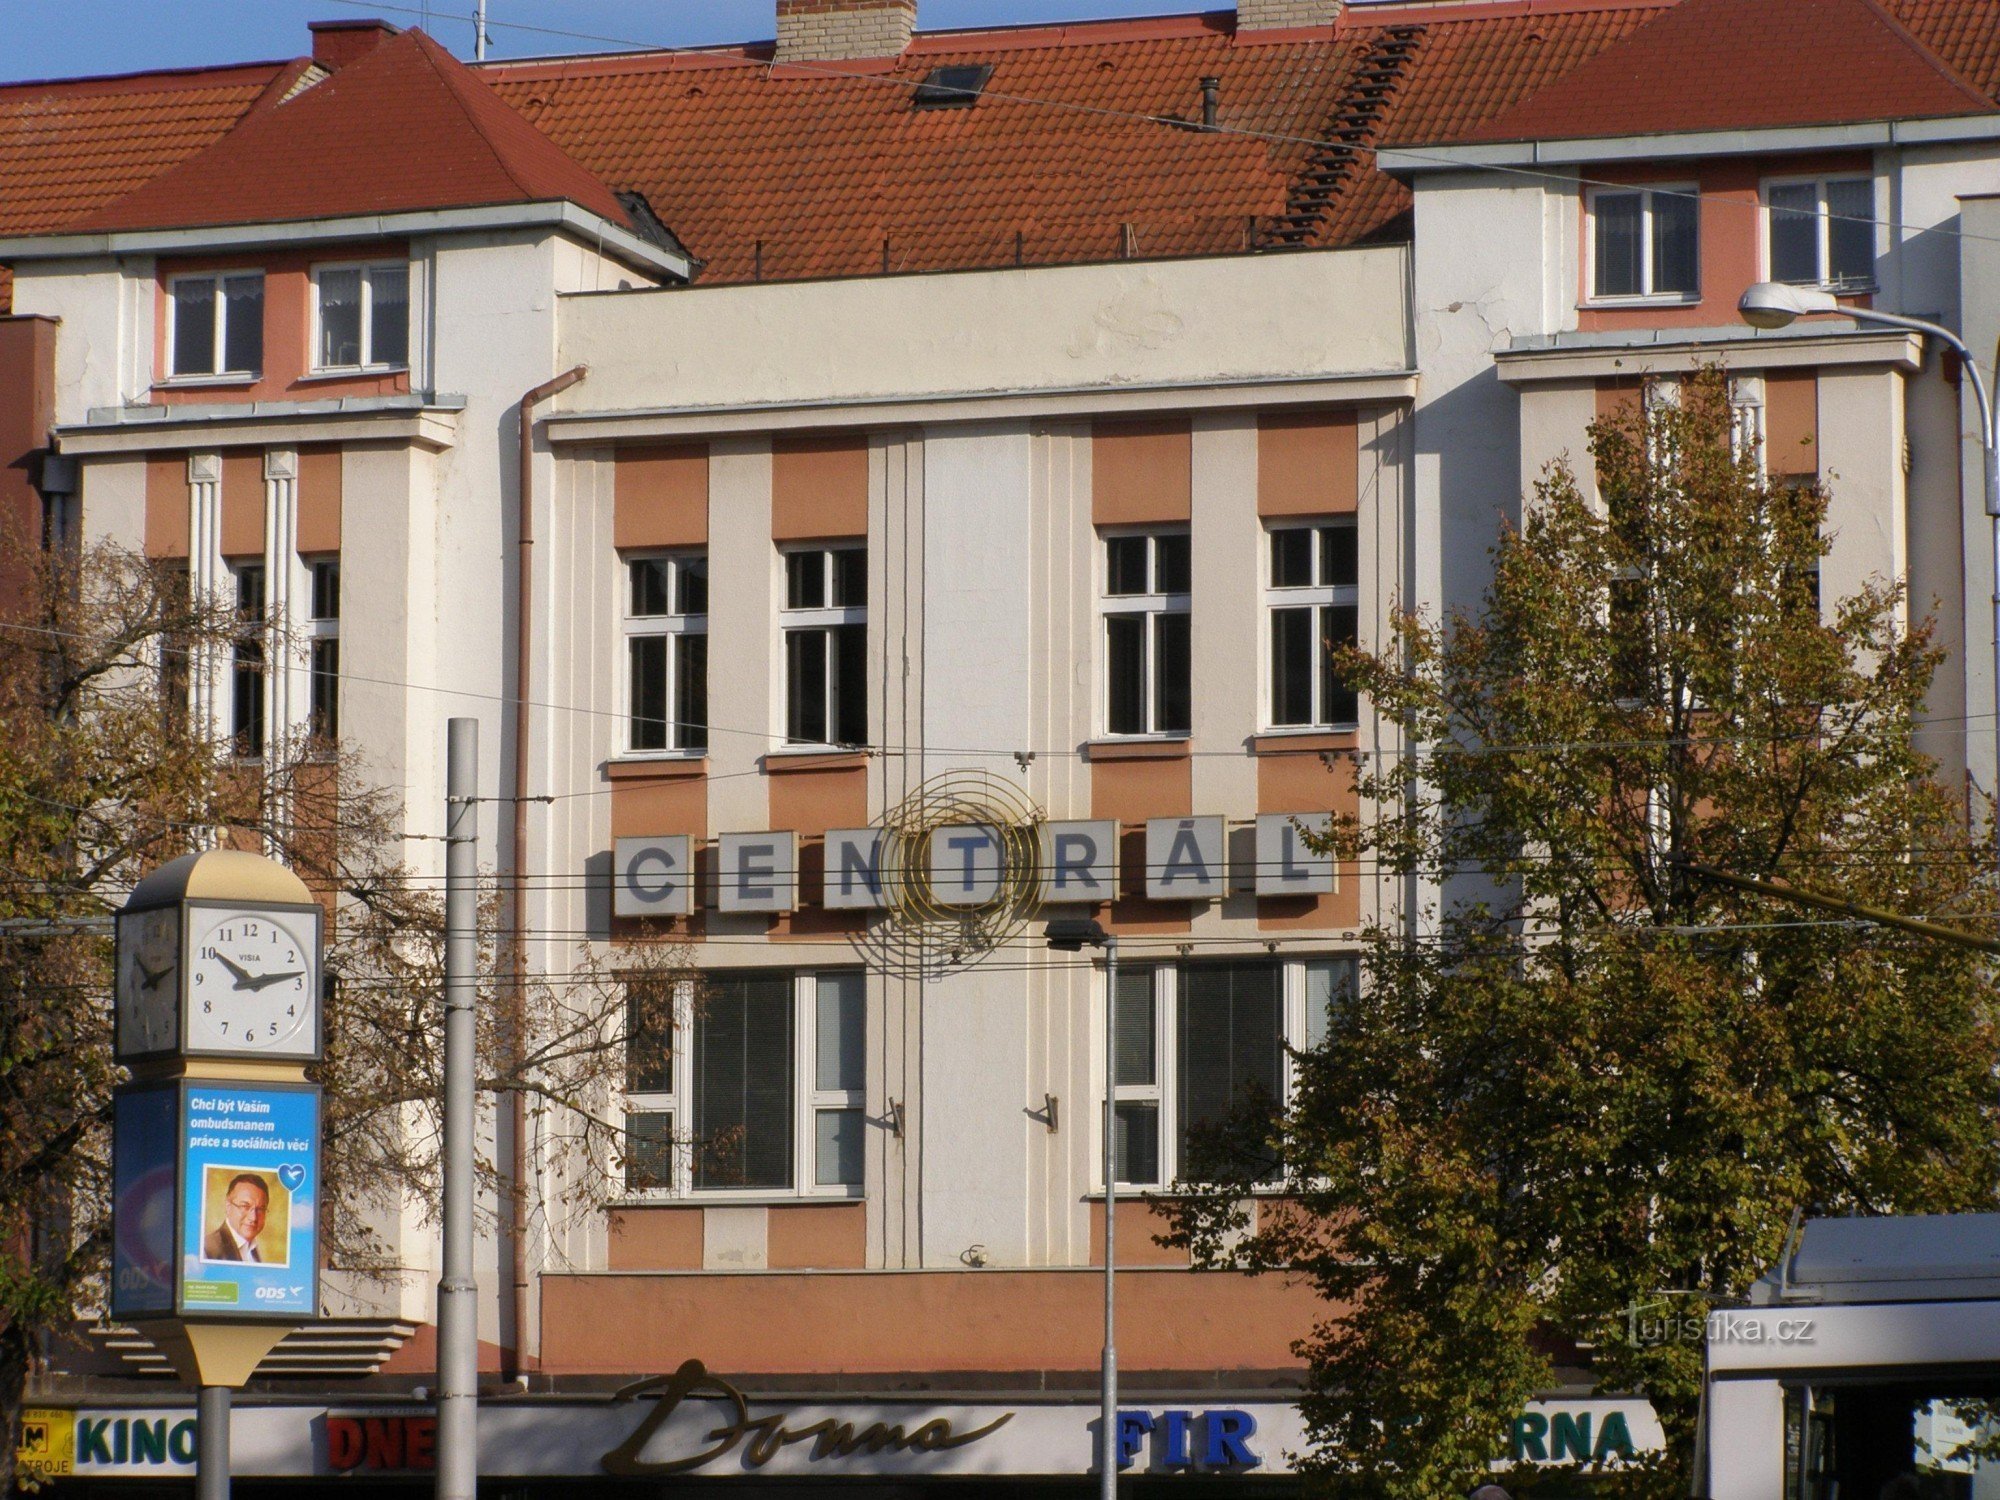 Hradec Králové - bioscoop Centrál